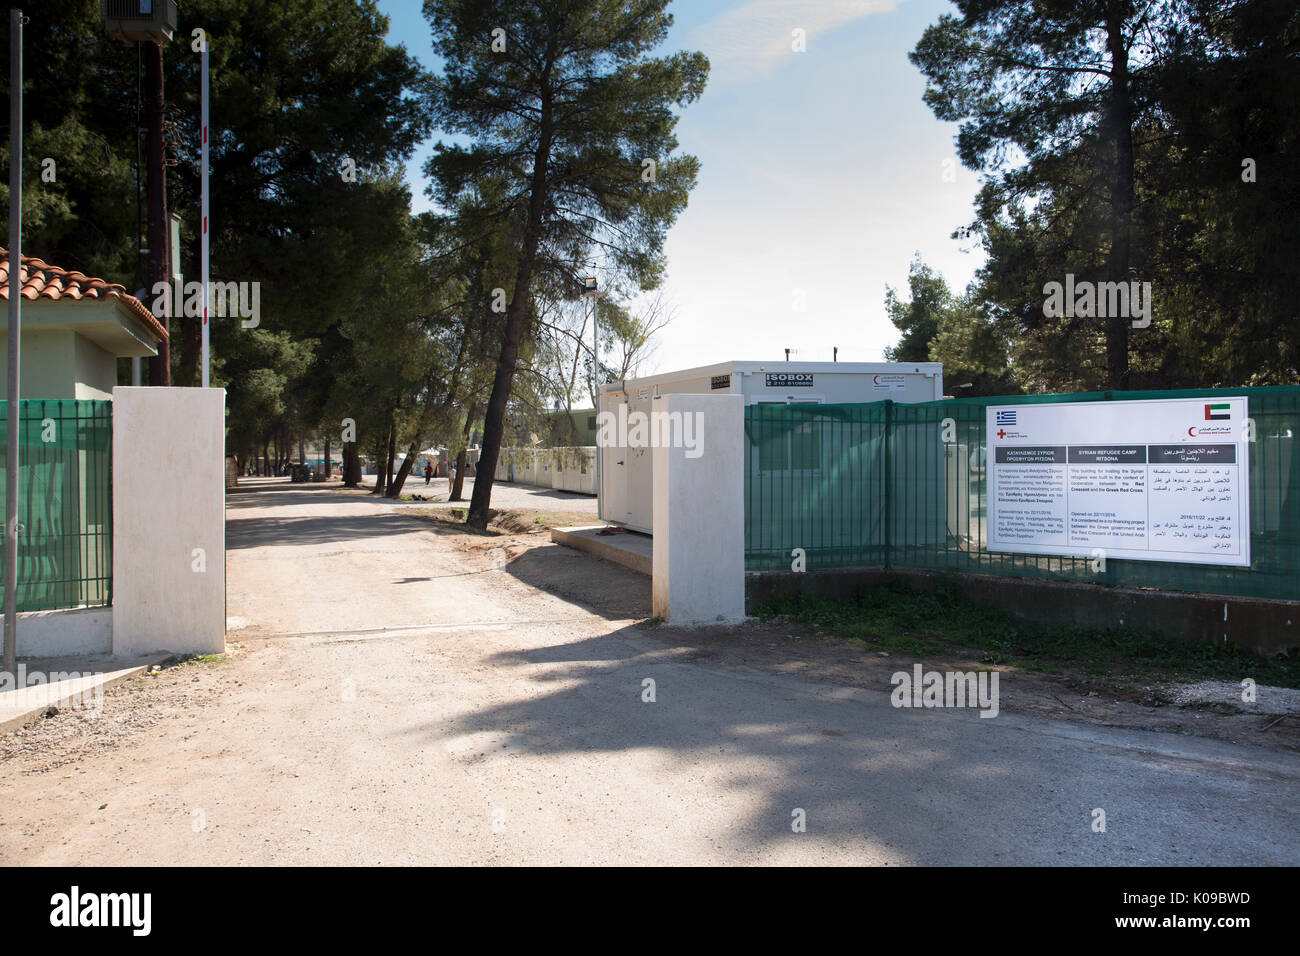 Puerta de entrada de Ritsona campamento de refugiados con un cartel en griego, inglés y árabe diciendo de cooperación griego de la Cruz Roja y de la Media Luna Roja de los Emiratos. Foto de stock